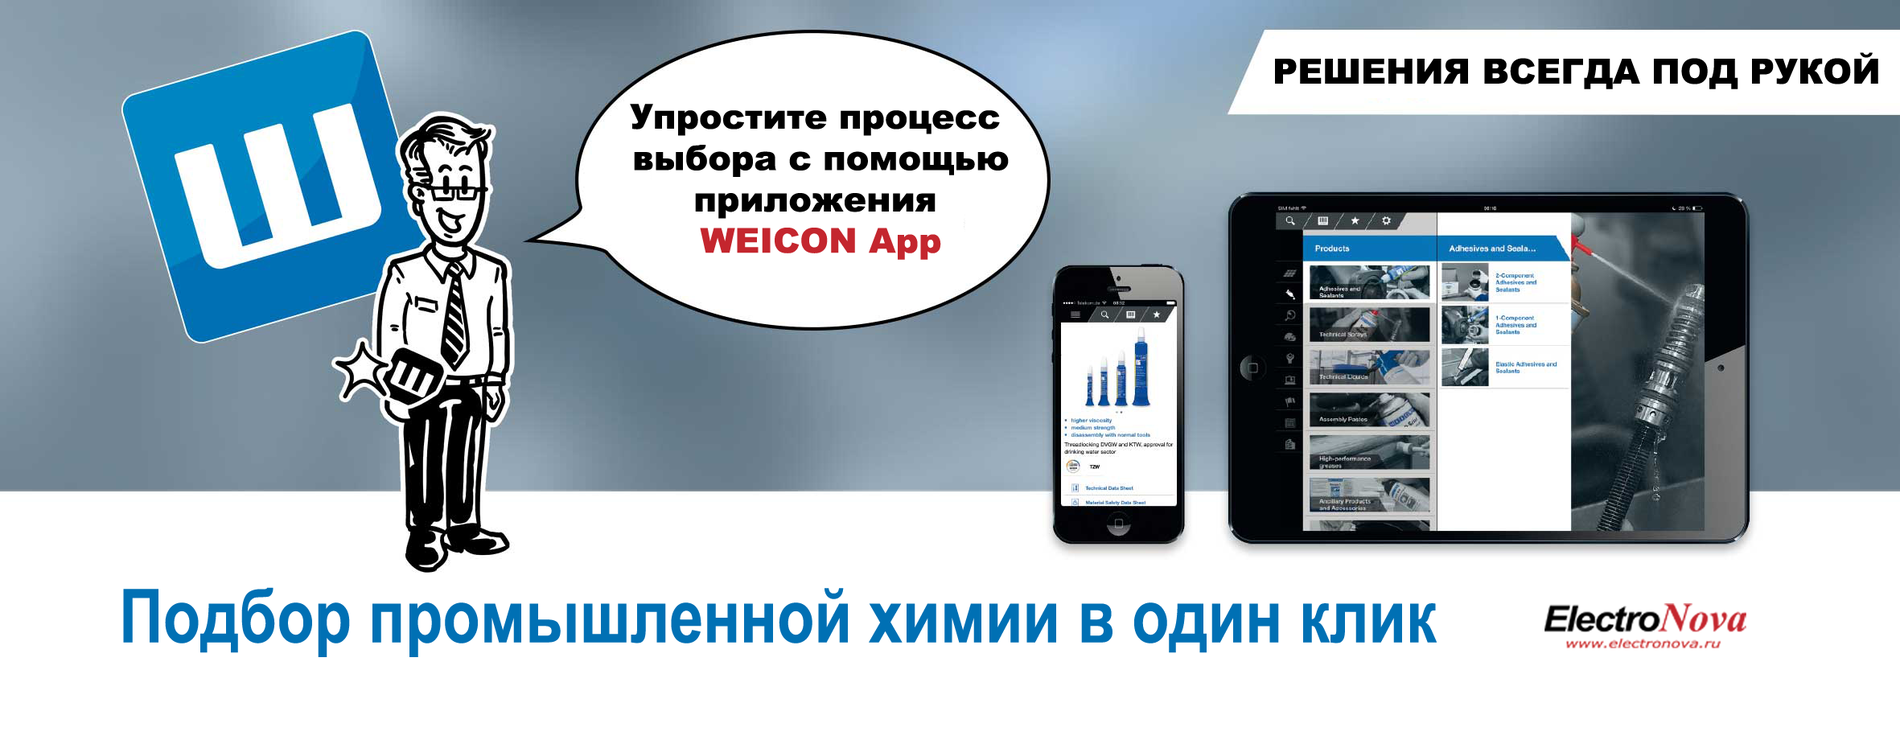 Weicon App приложение для подбора промышленной химии Weicon